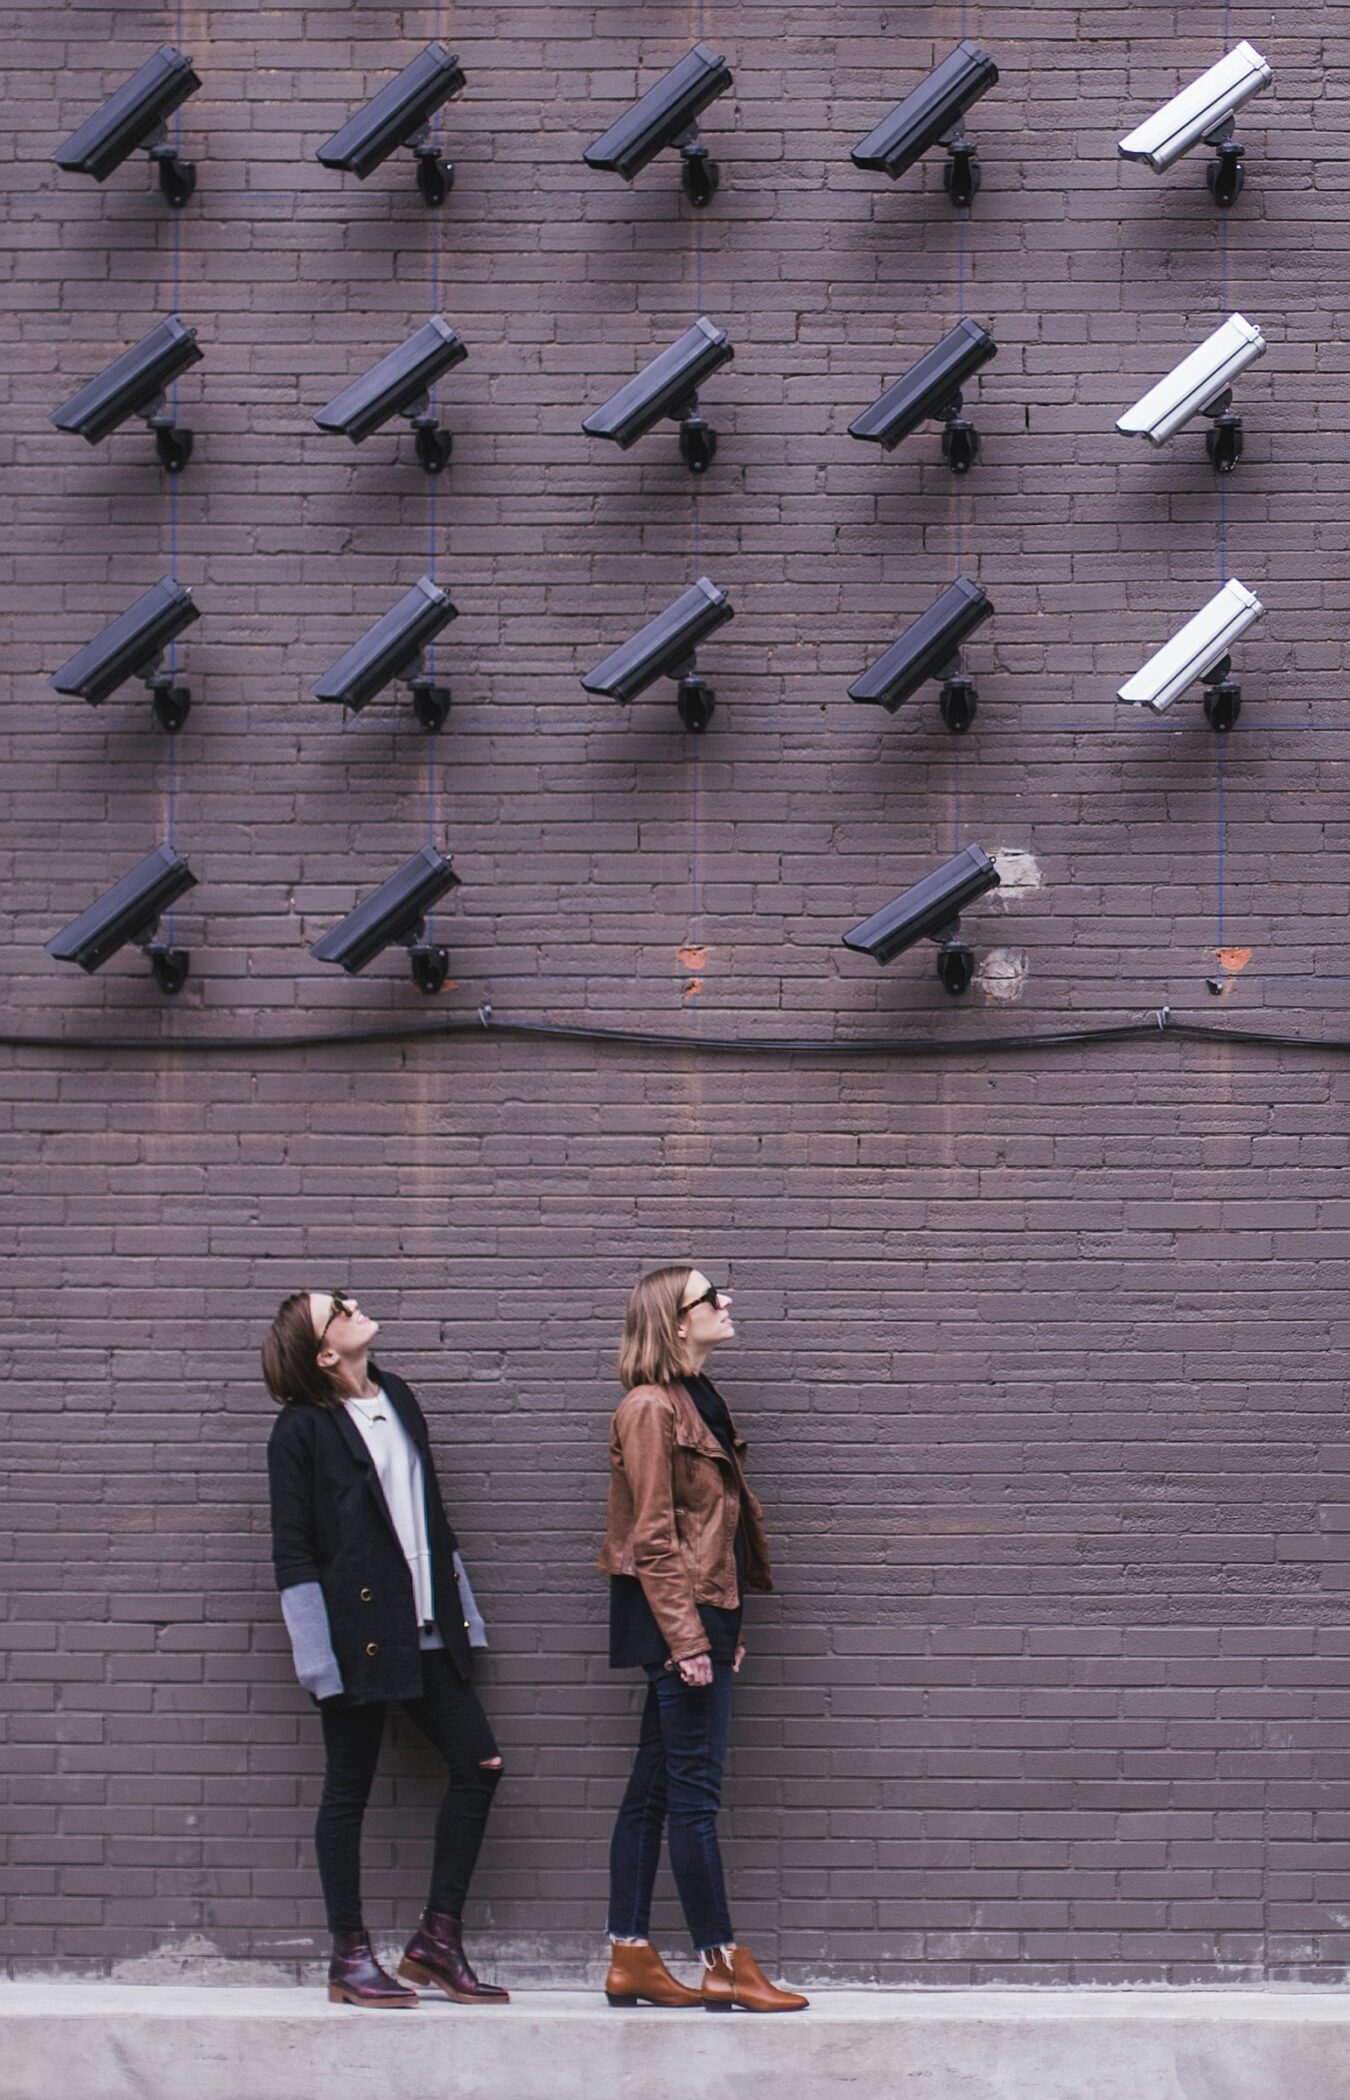 Frauen vor einer Wand voller Überwachungskameras